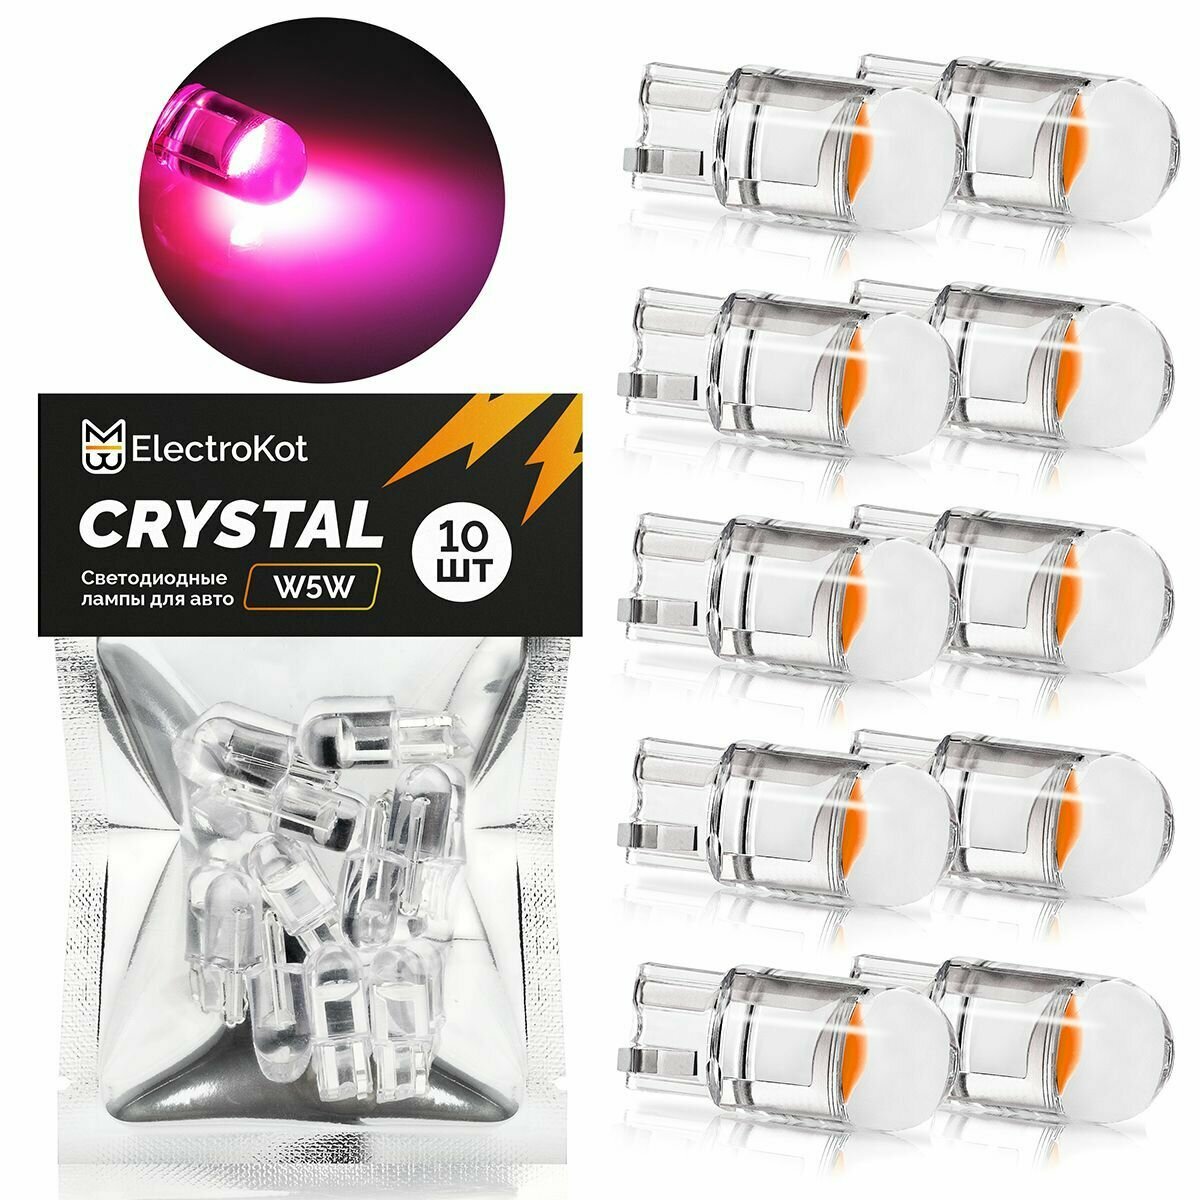 Светодиодная лампа для авто ElectroKot Crystal T10 W5W розовый свет 10 шт в подсветку салона/багажника/номерного знака Т10